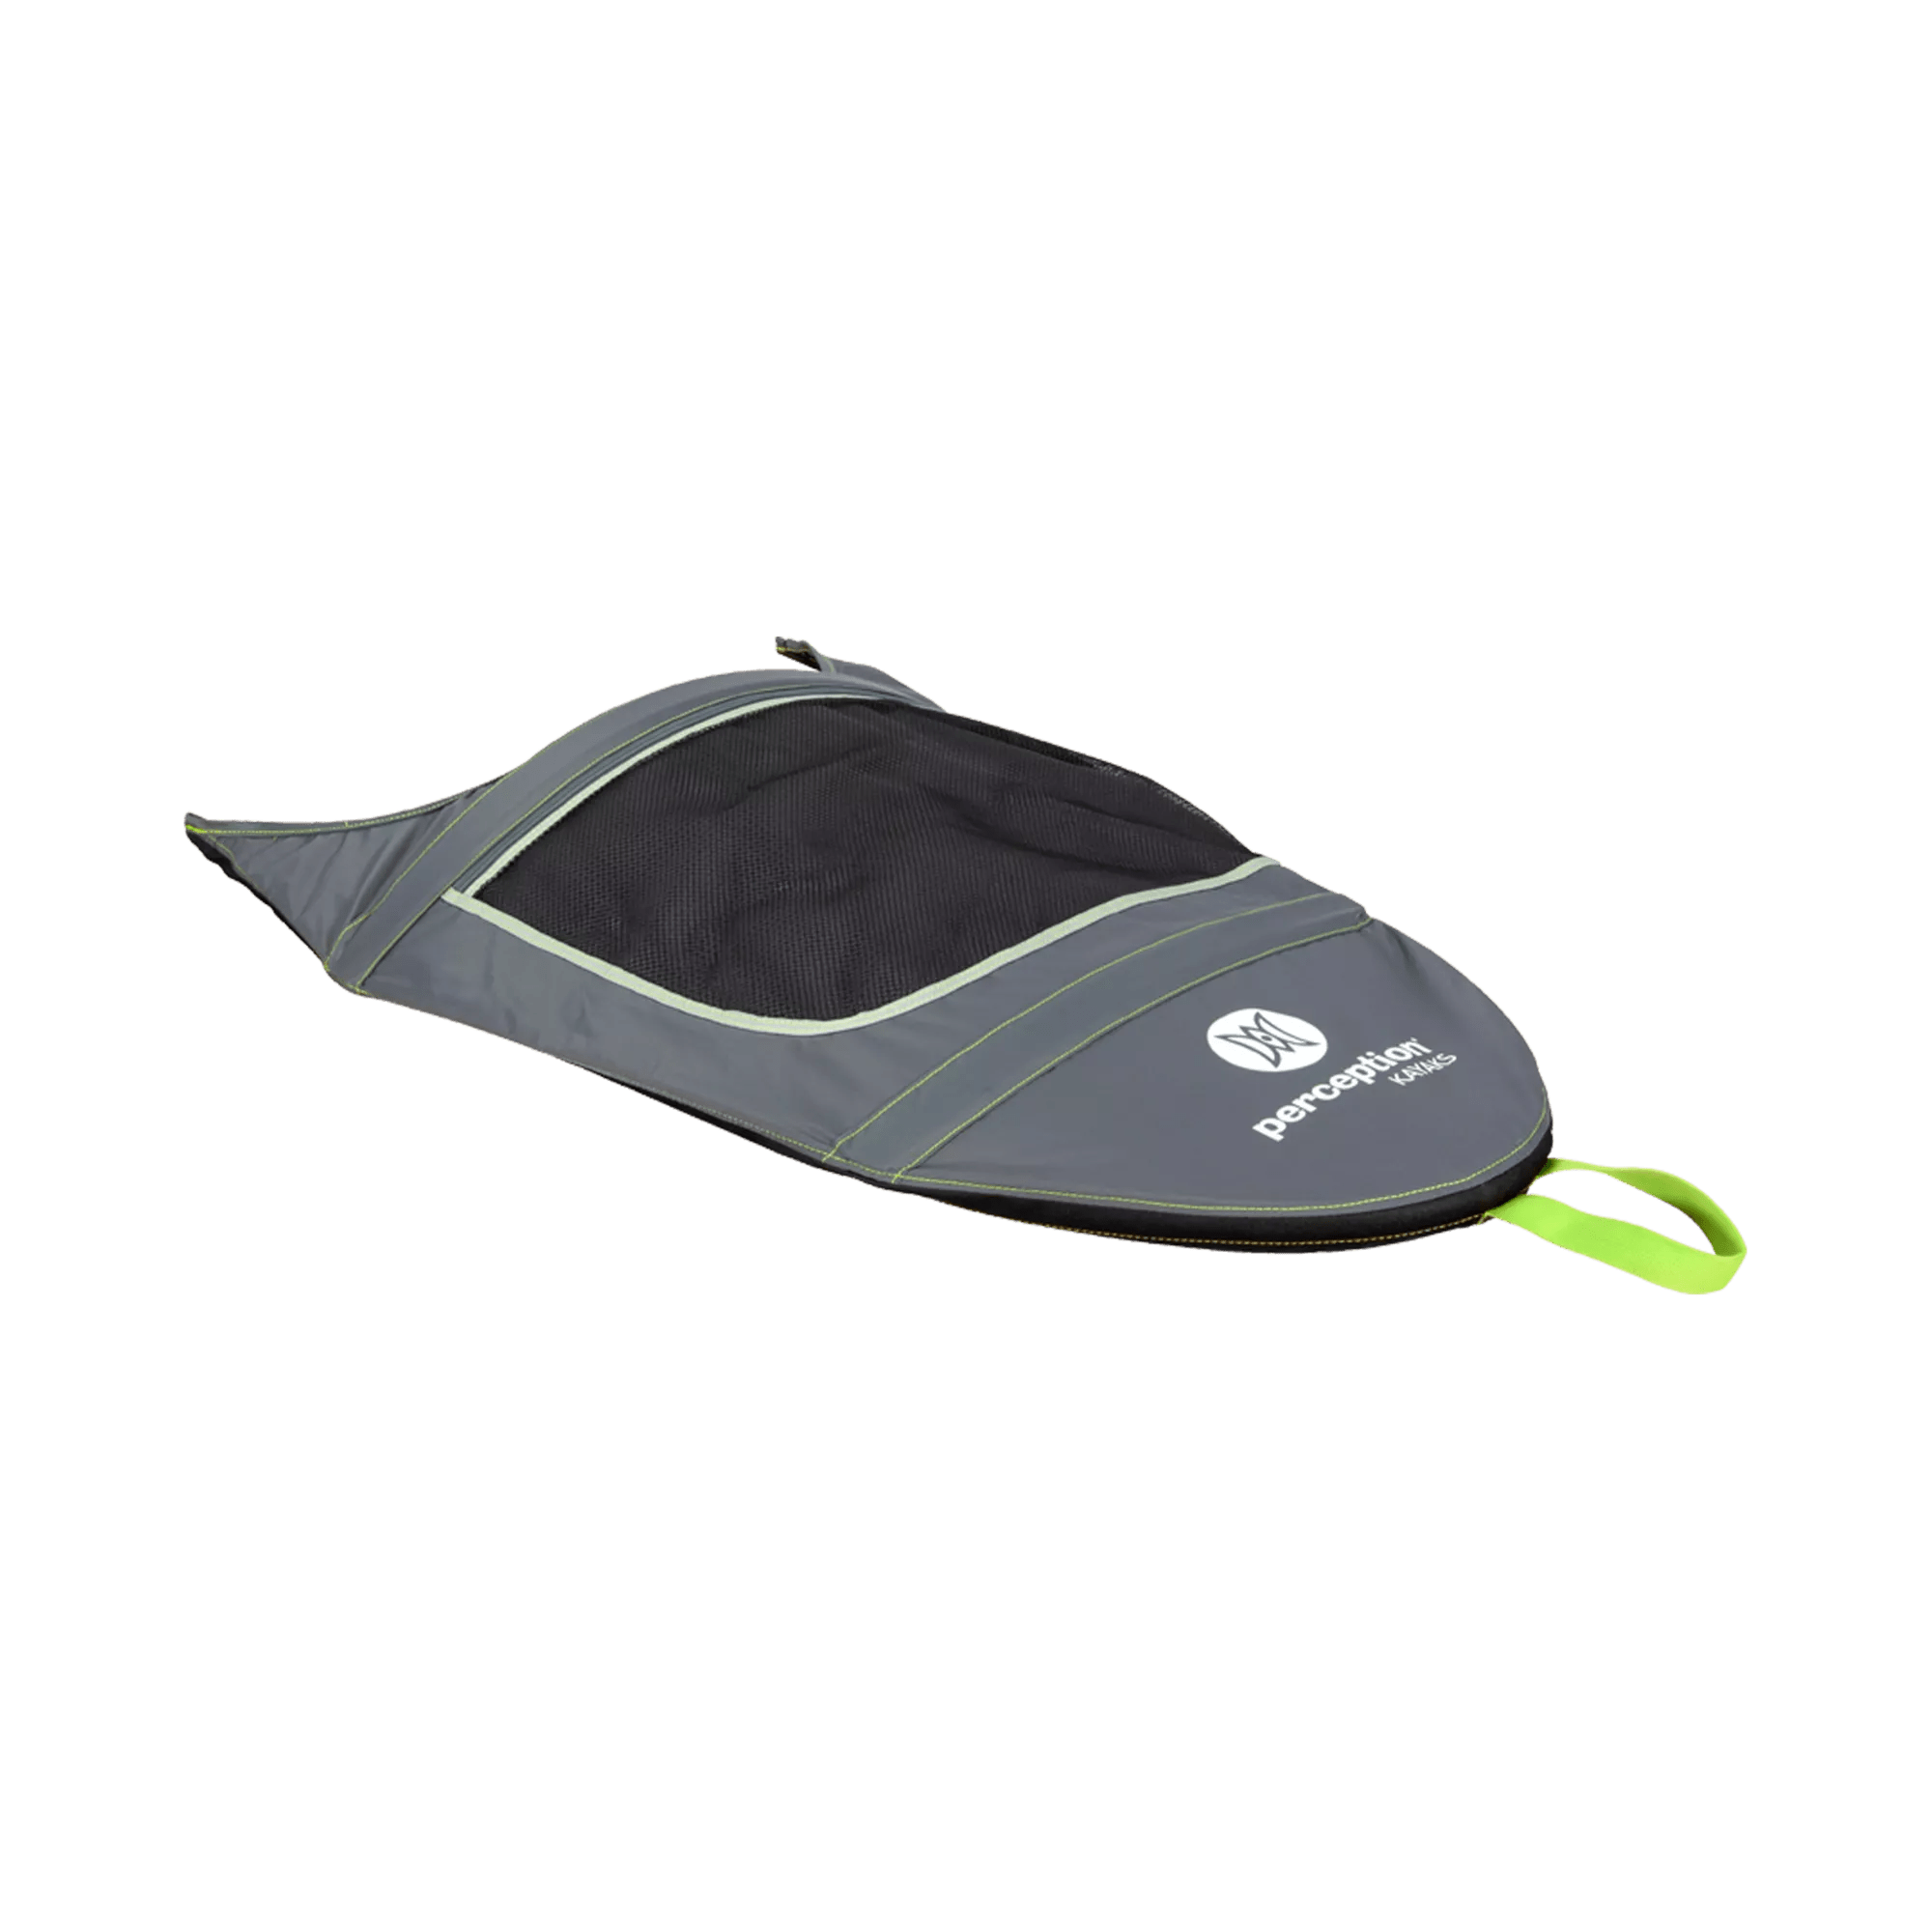 PERCEPTION - Pare-soleil Truefit pour kayaks semi-fermés – Taille P12-P13 - Green - 8080060 - ISO